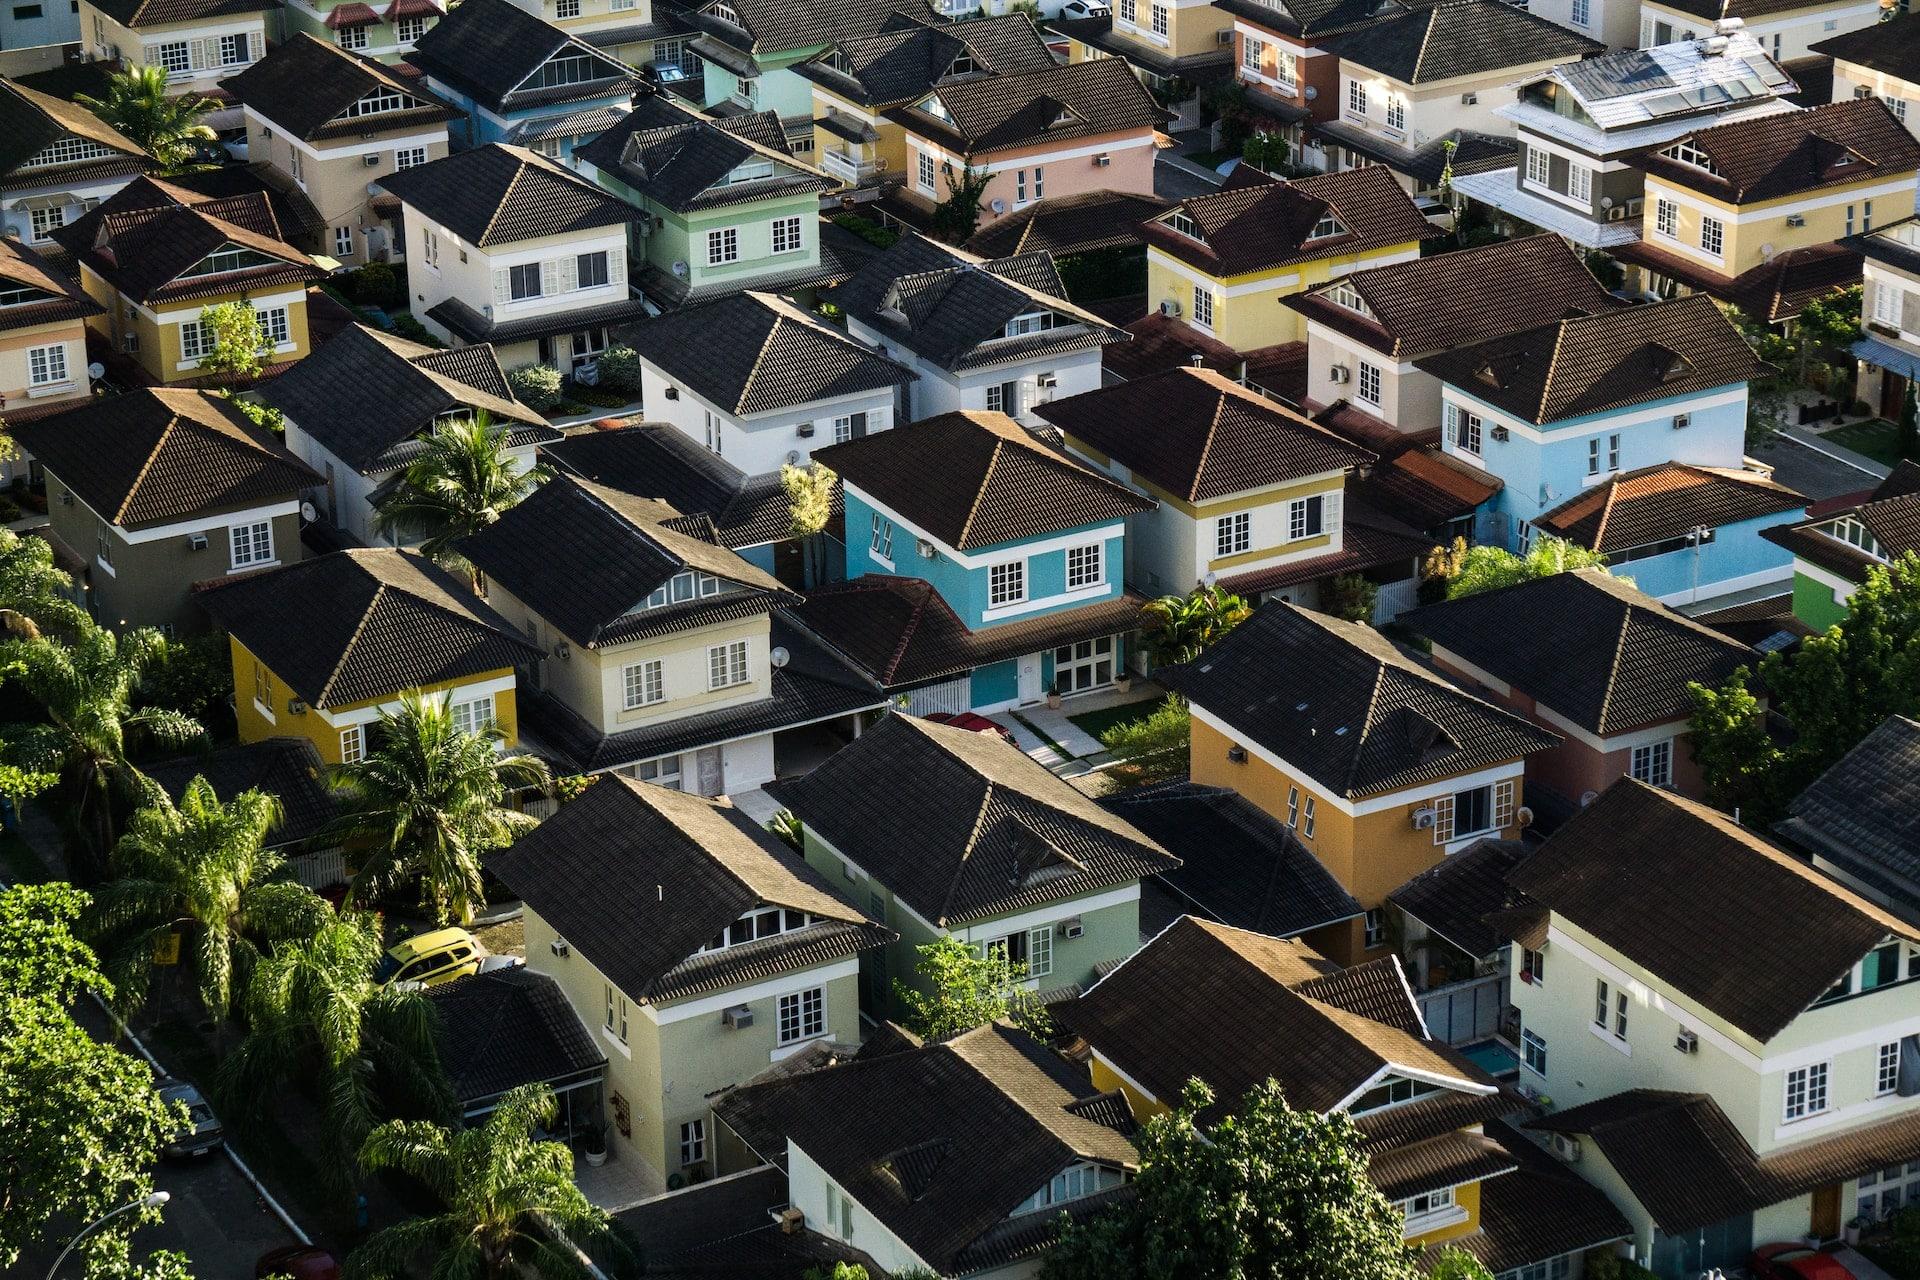 Prêt immobilier pour l'investissement Locatif : Comment présenter un dossier solide ?